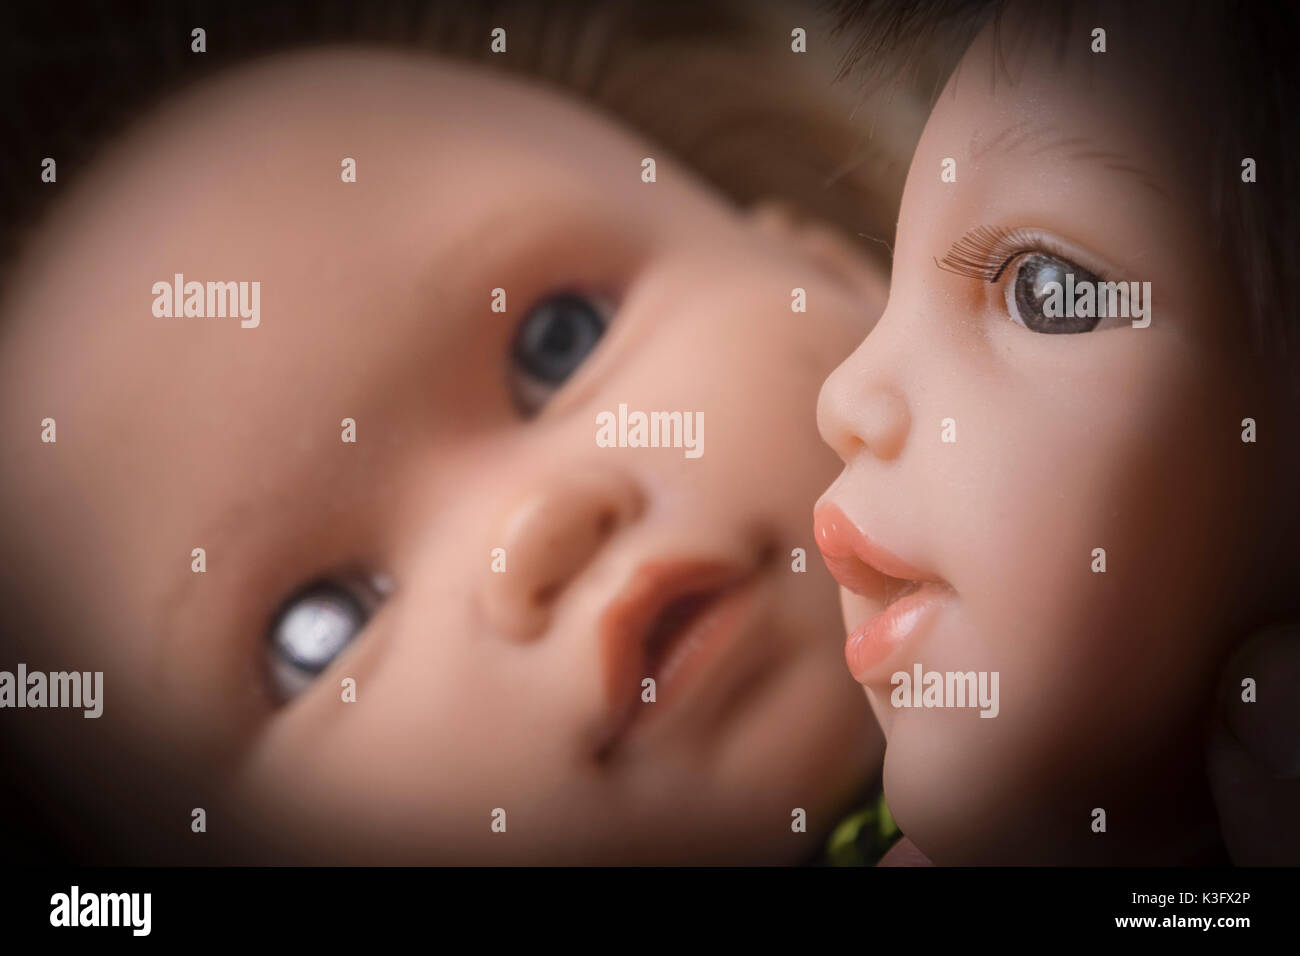 A baby dolls head Stock Photo - Alamy